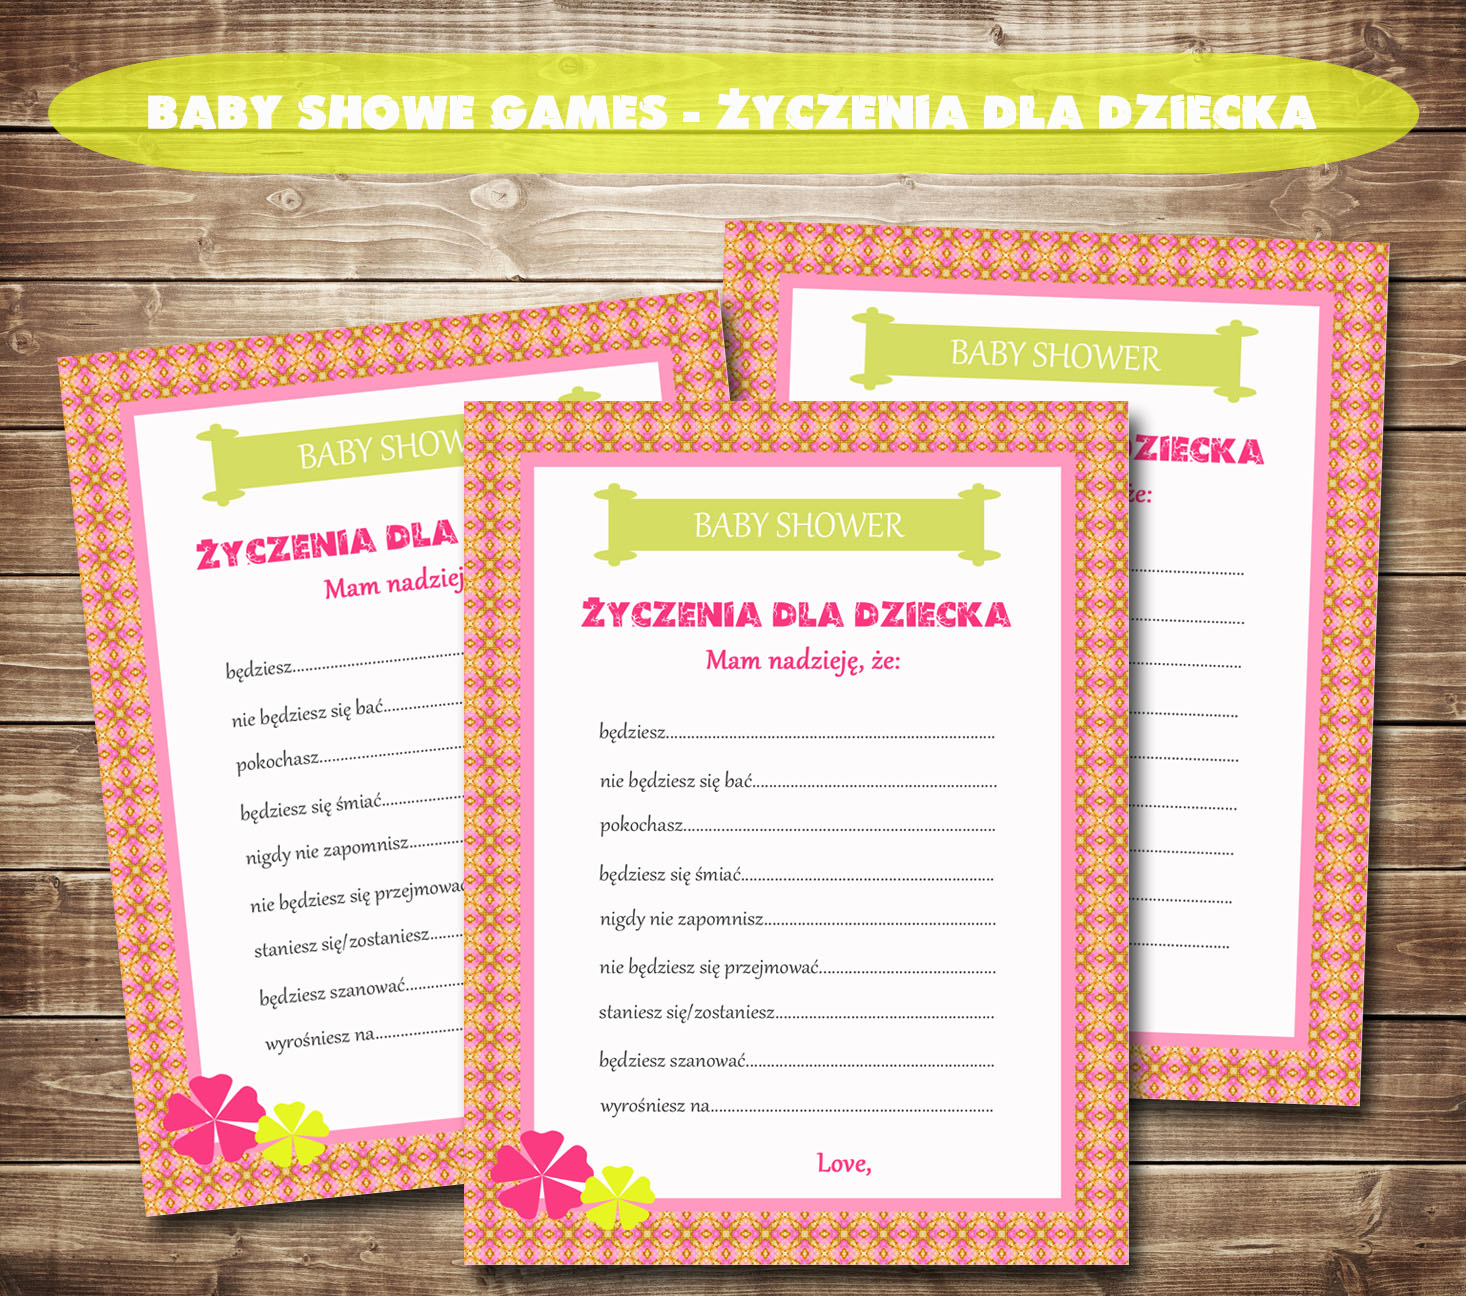 Quiz Na Baby Shower Po Polsku SoCute.pl INSPIRACJE: Gra na Baby Shower - Życzenia dla dziecka!